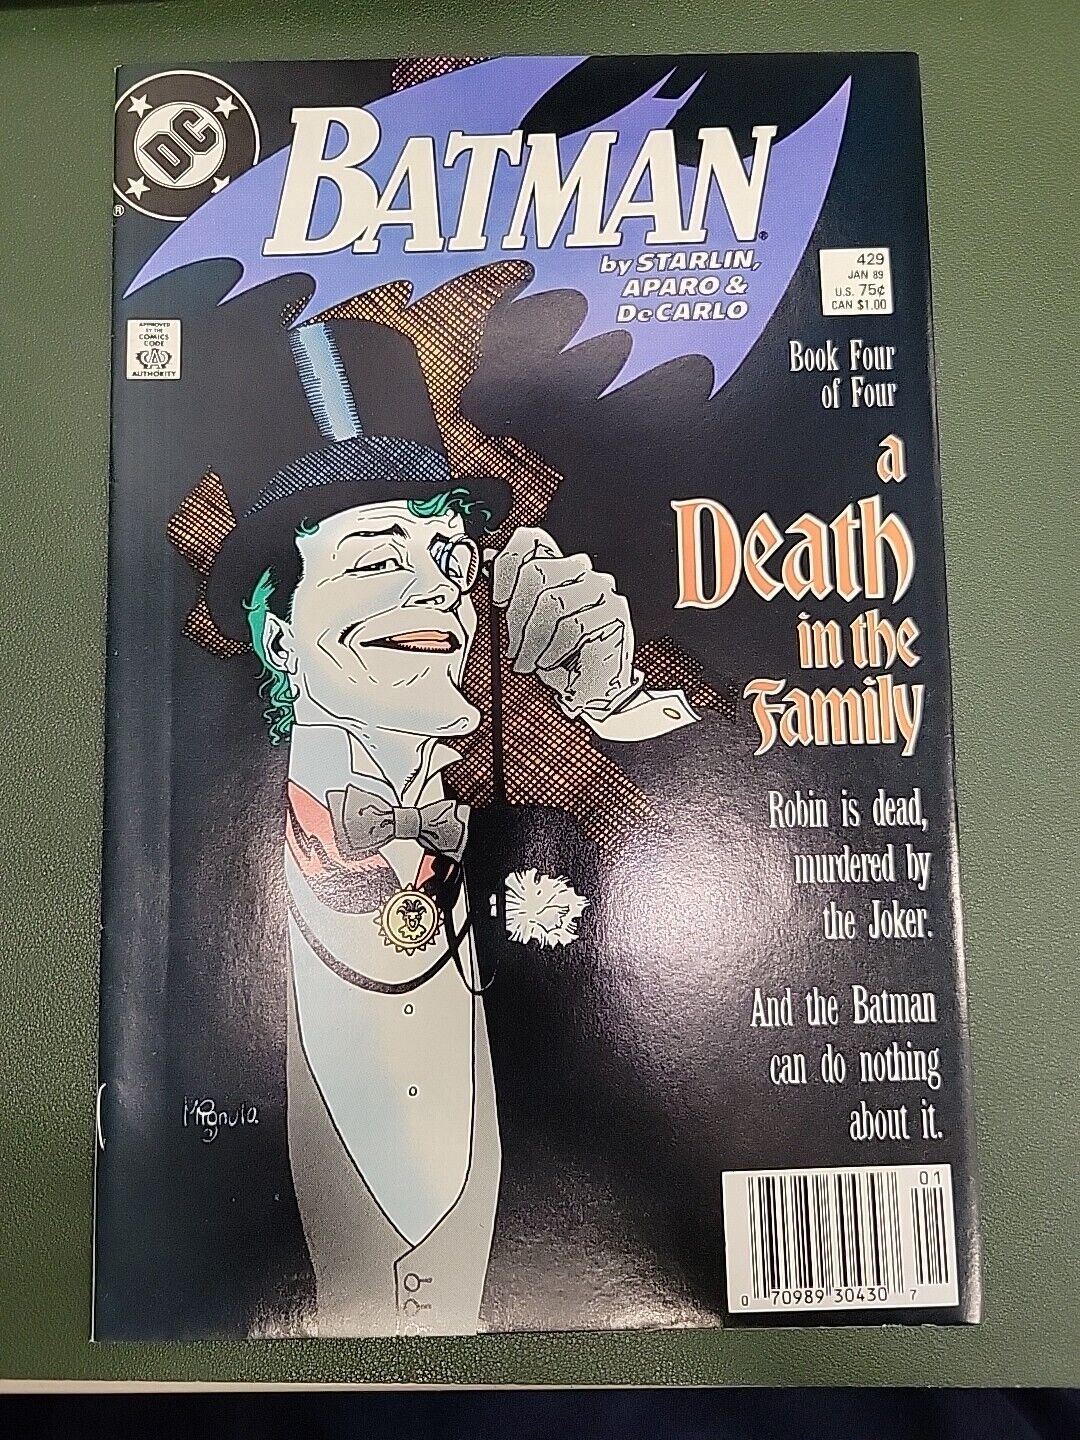 BATMAN #429 ( 1988 DC Comics ) - A Death In The Family - Part 4 Of 4 Copy 2